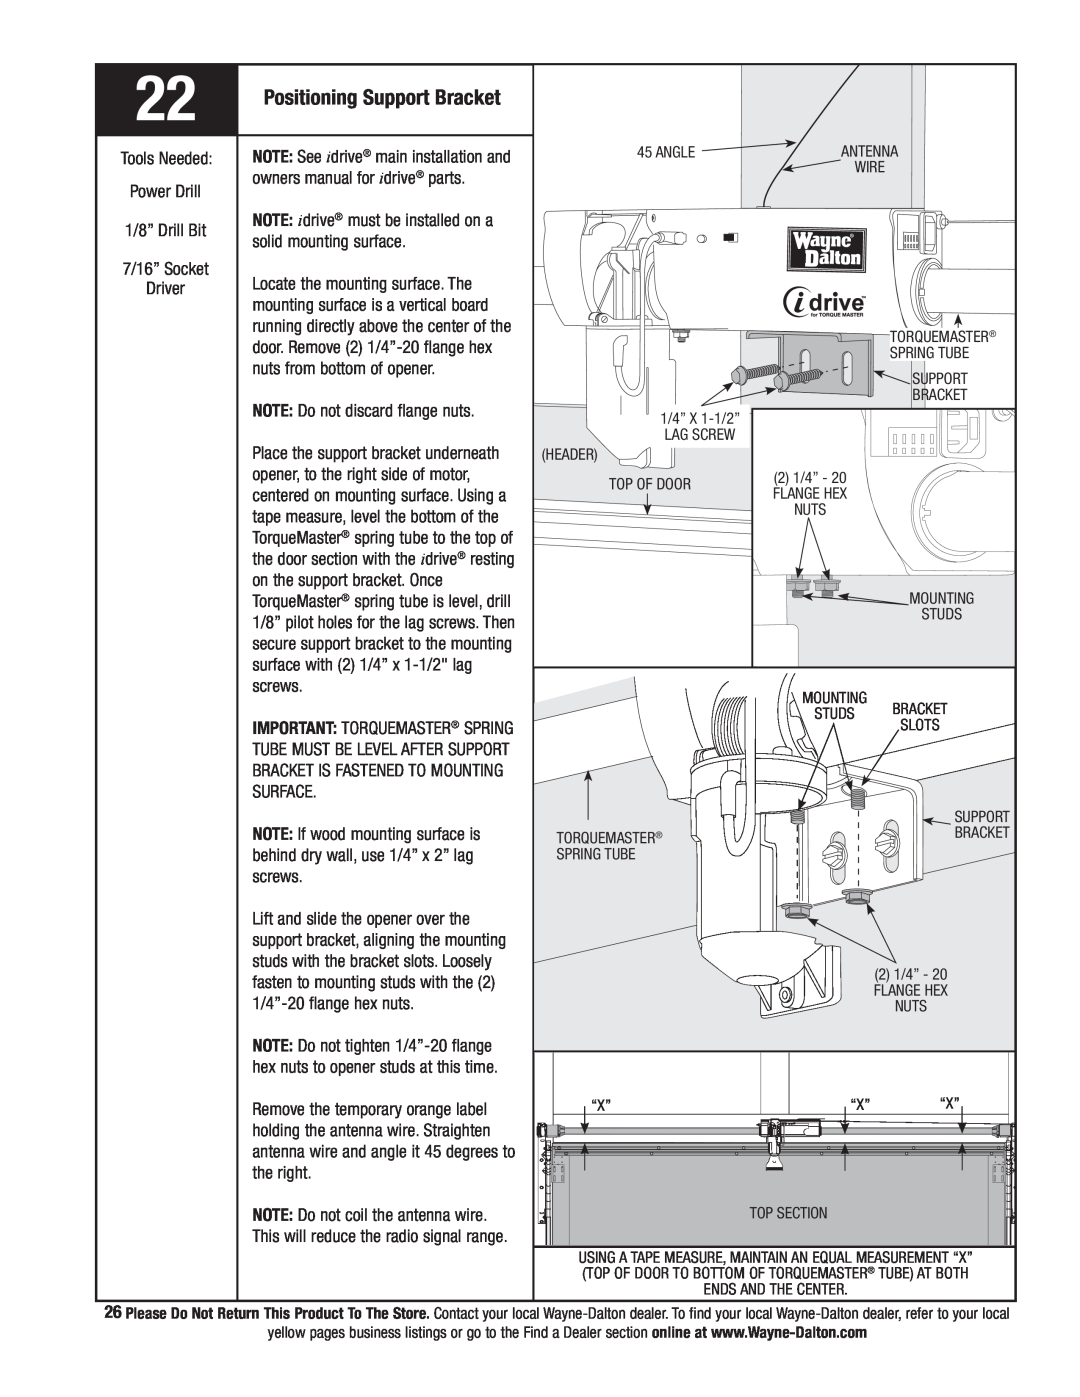 Wayne-Dalton 9800 installation instructions Positioning Support Bracket 